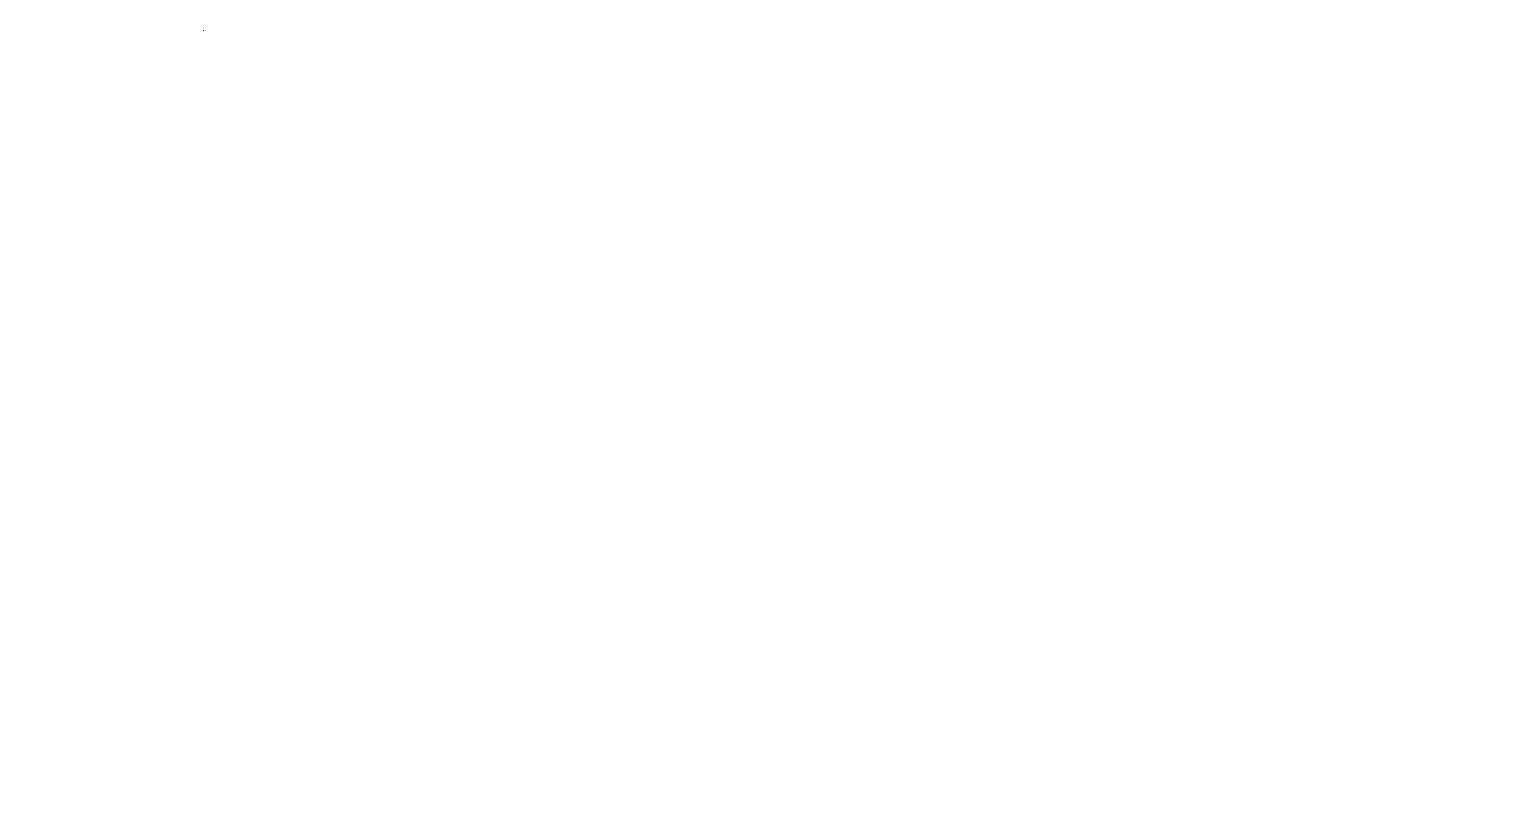 Автомобиль УАЗ ПАТРИОТ, 2015 г.в., г/н К413ЕЕ35, VIN XTT316300F1050736Собственник: ООО «Вайд Вуд»Мес